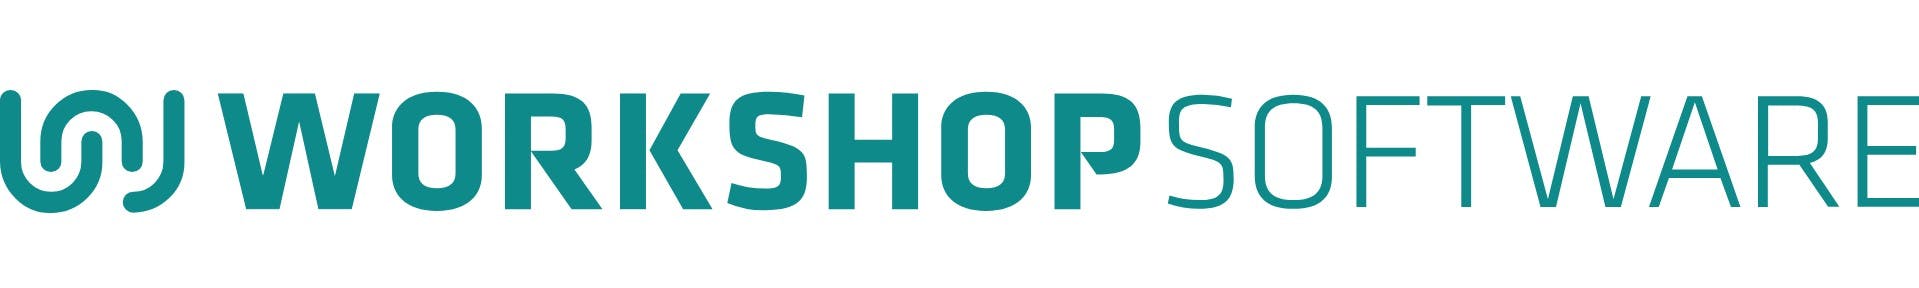 Workshop Software logo